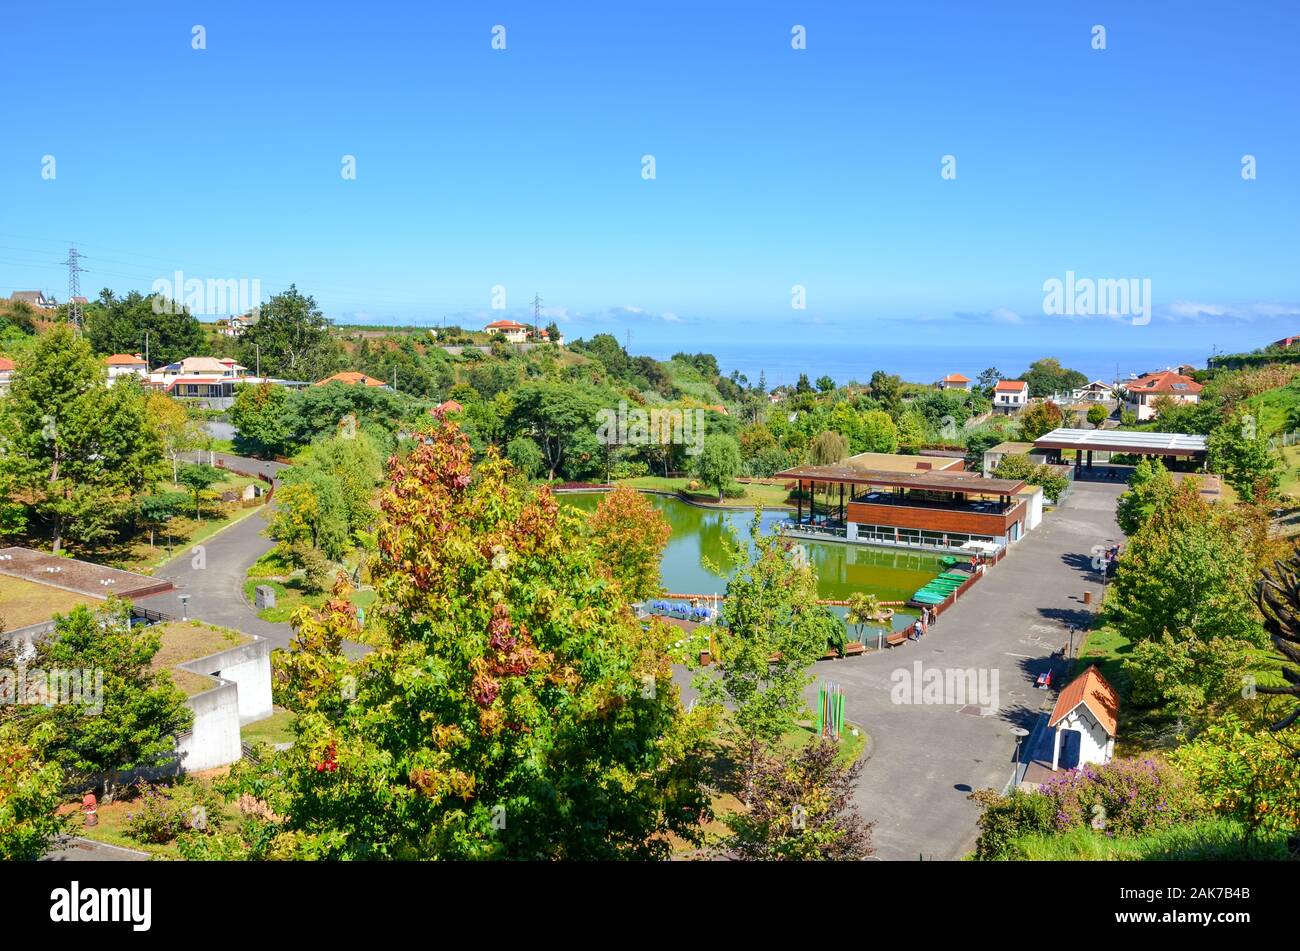 Santana, Madeira, Portugal - Sep 24, 2019 : vue sur la parc à thème de Madère. Les arbres verts, lac, maisons et des chemins de randonnée. Centre d'exposition dédié à l'îles portugaises. Banque D'Images